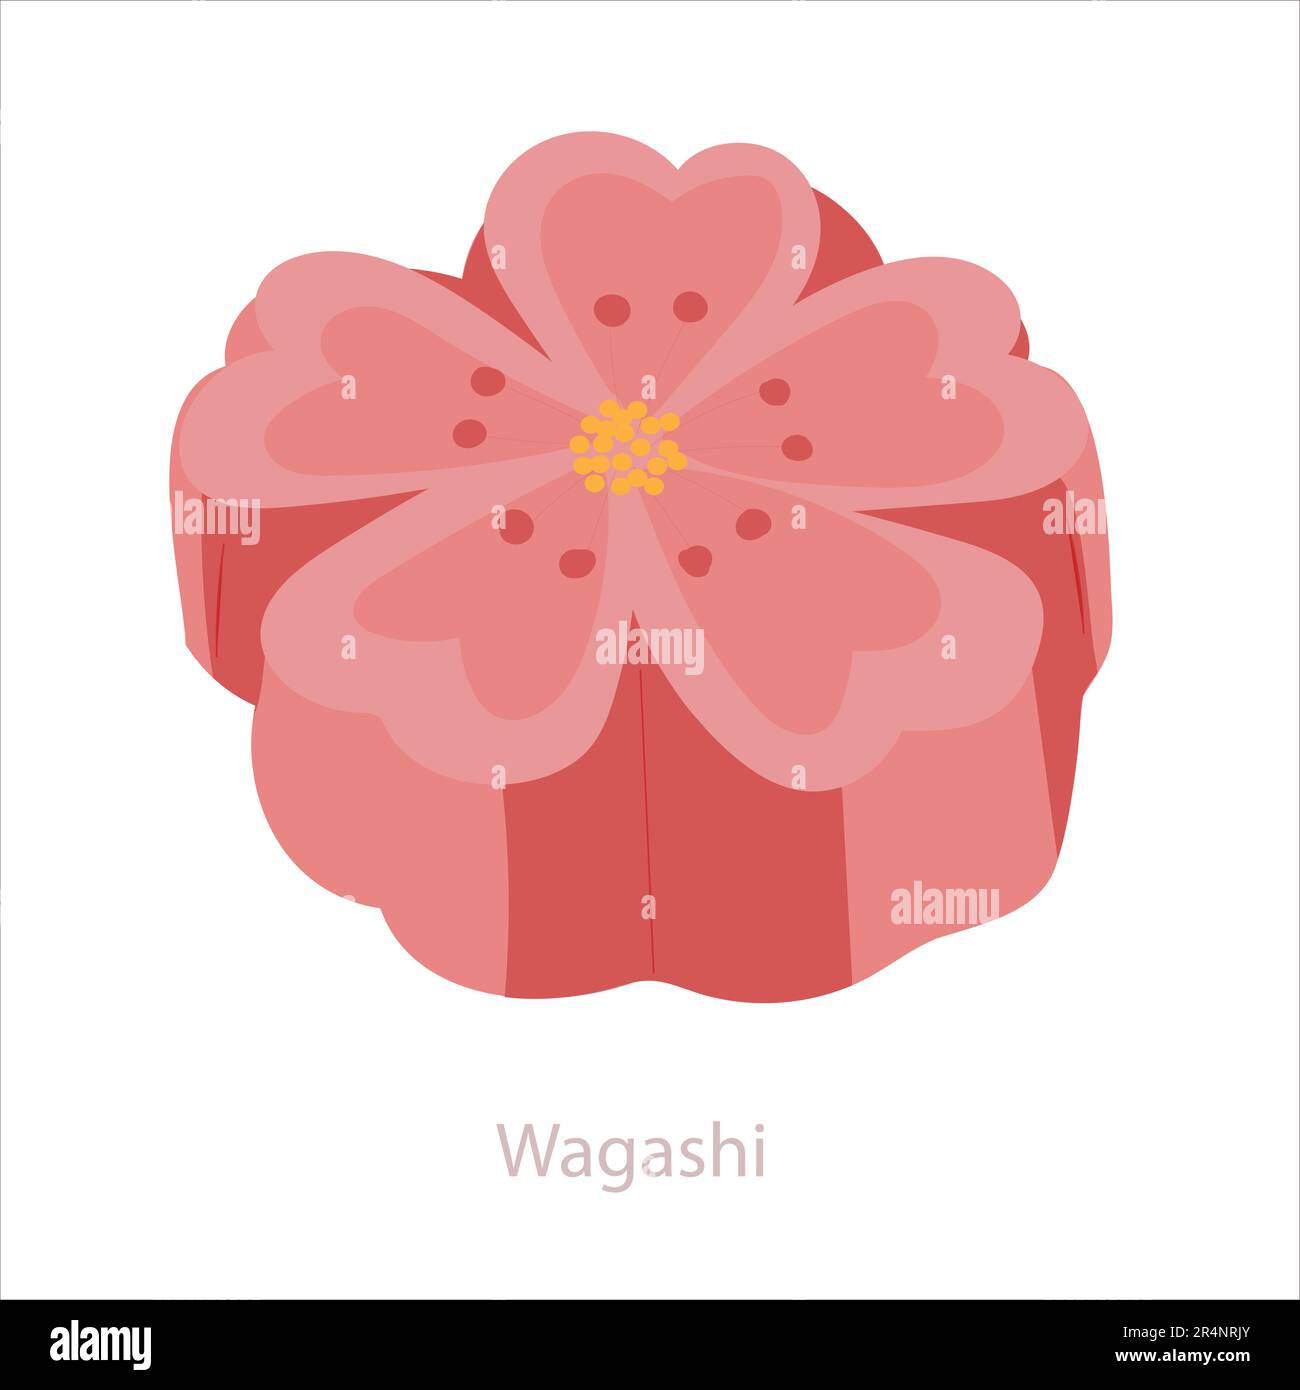 Wagashi Mochi. Japanische traditionelle Wagashi-Gebäck-Blume. Vektorgrafik isoliert auf Weiß Stock Vektor